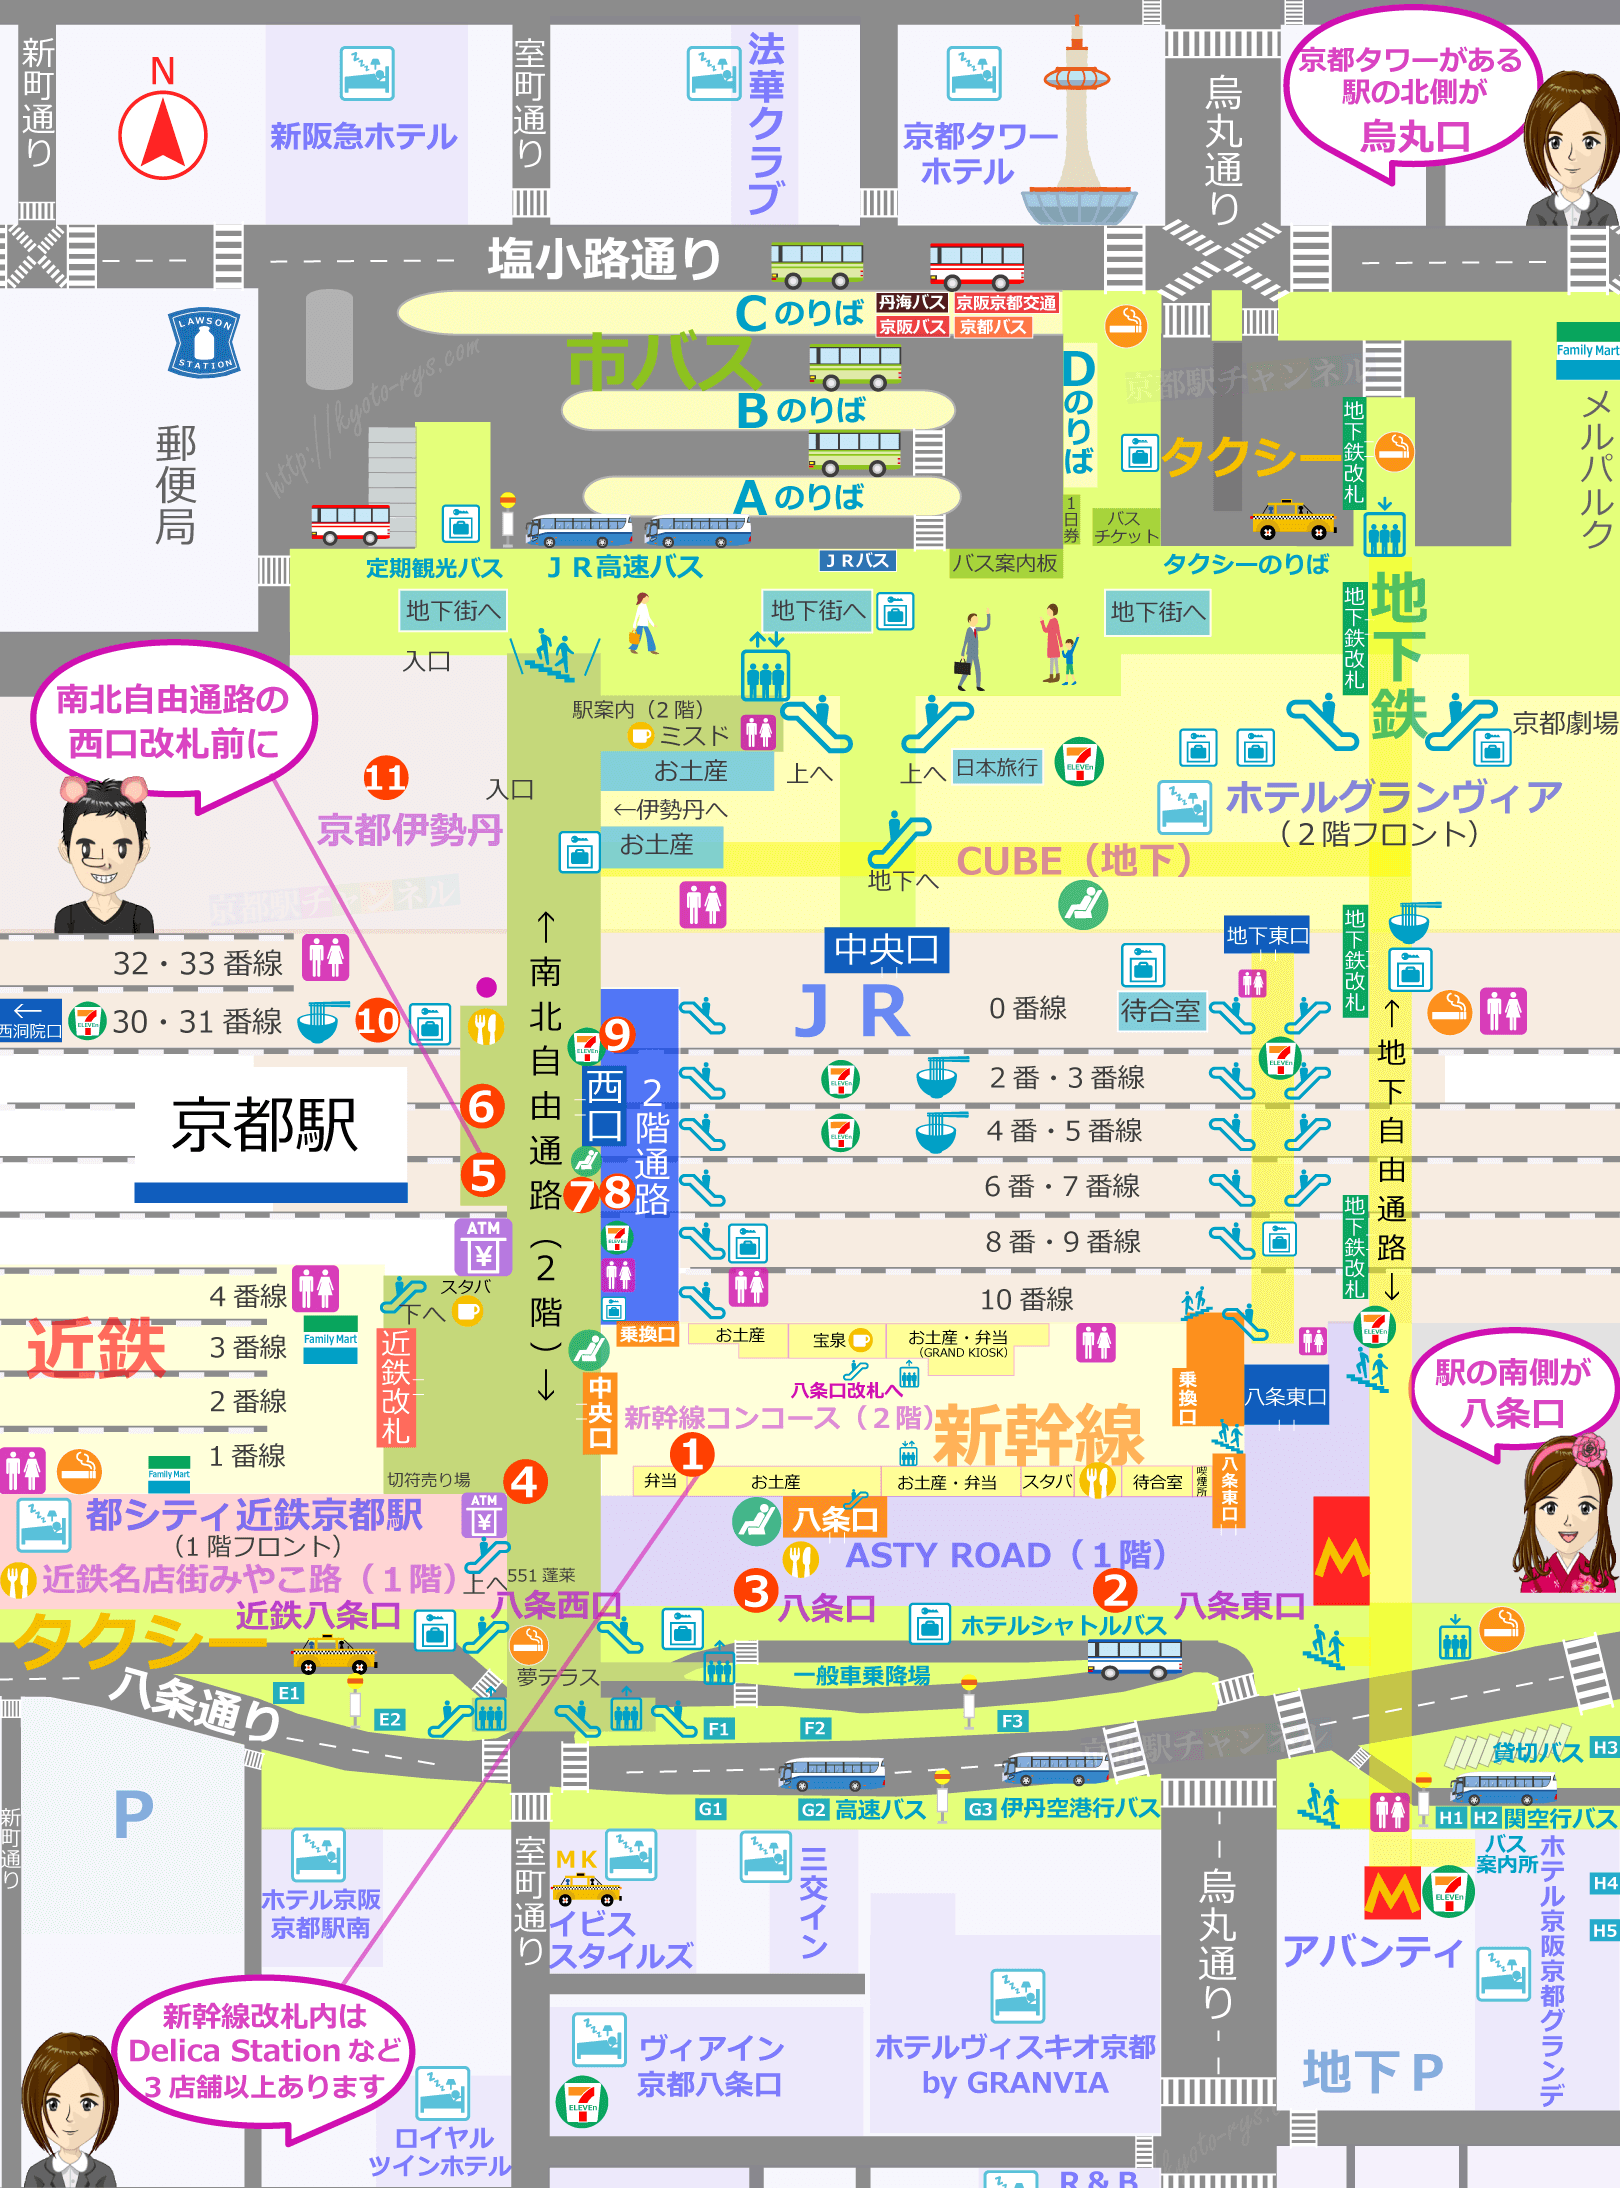 京都駅の構内図と駅弁の販売マップ